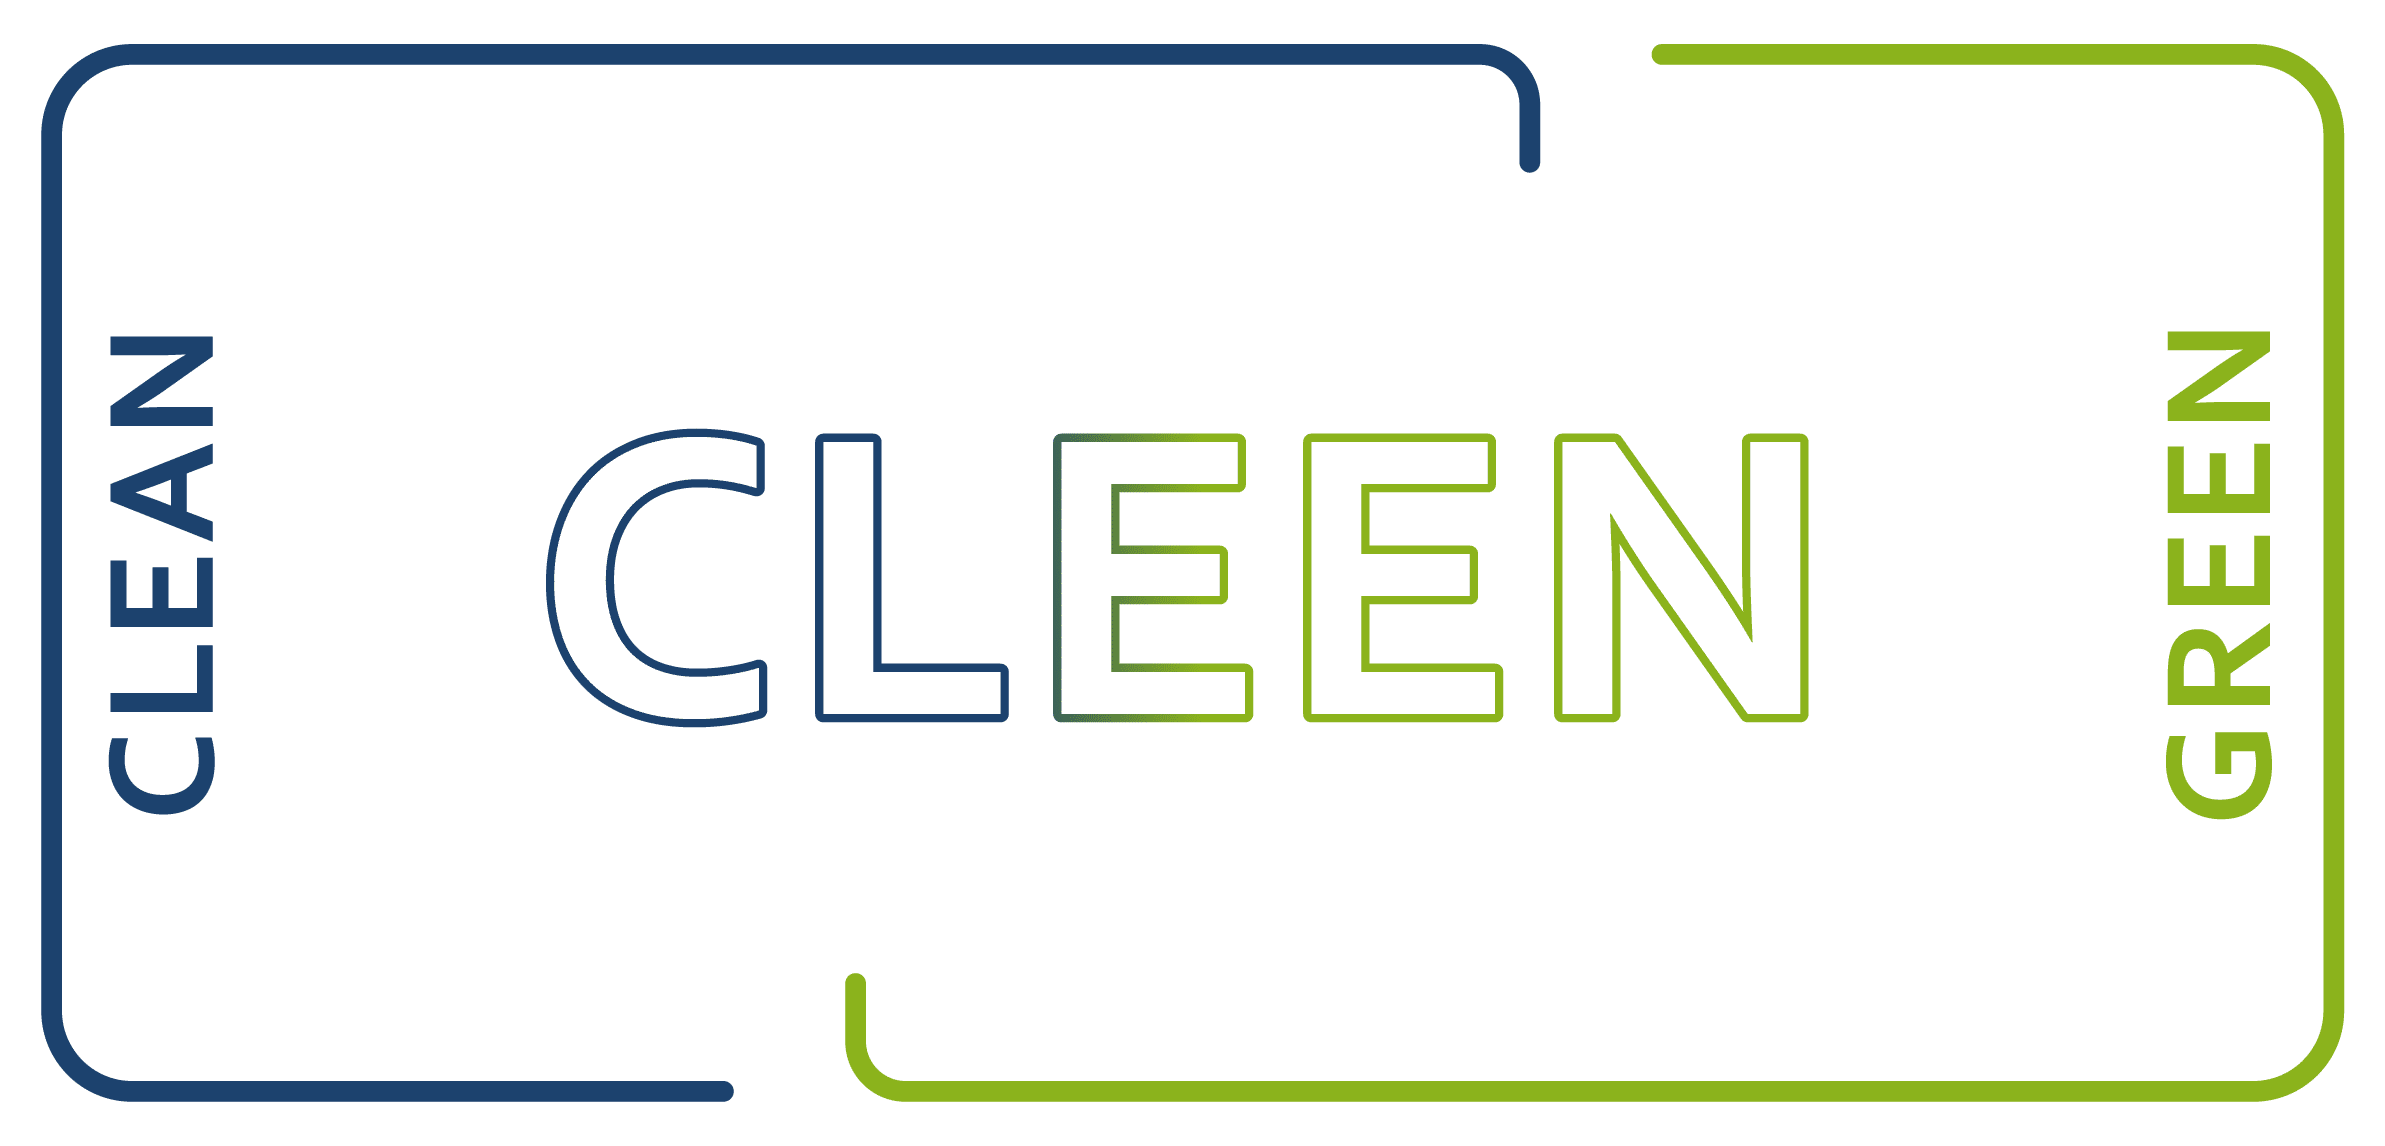 CLEEN ist ein Kunstwort aus den beiden Begriffen "clean" and "green".